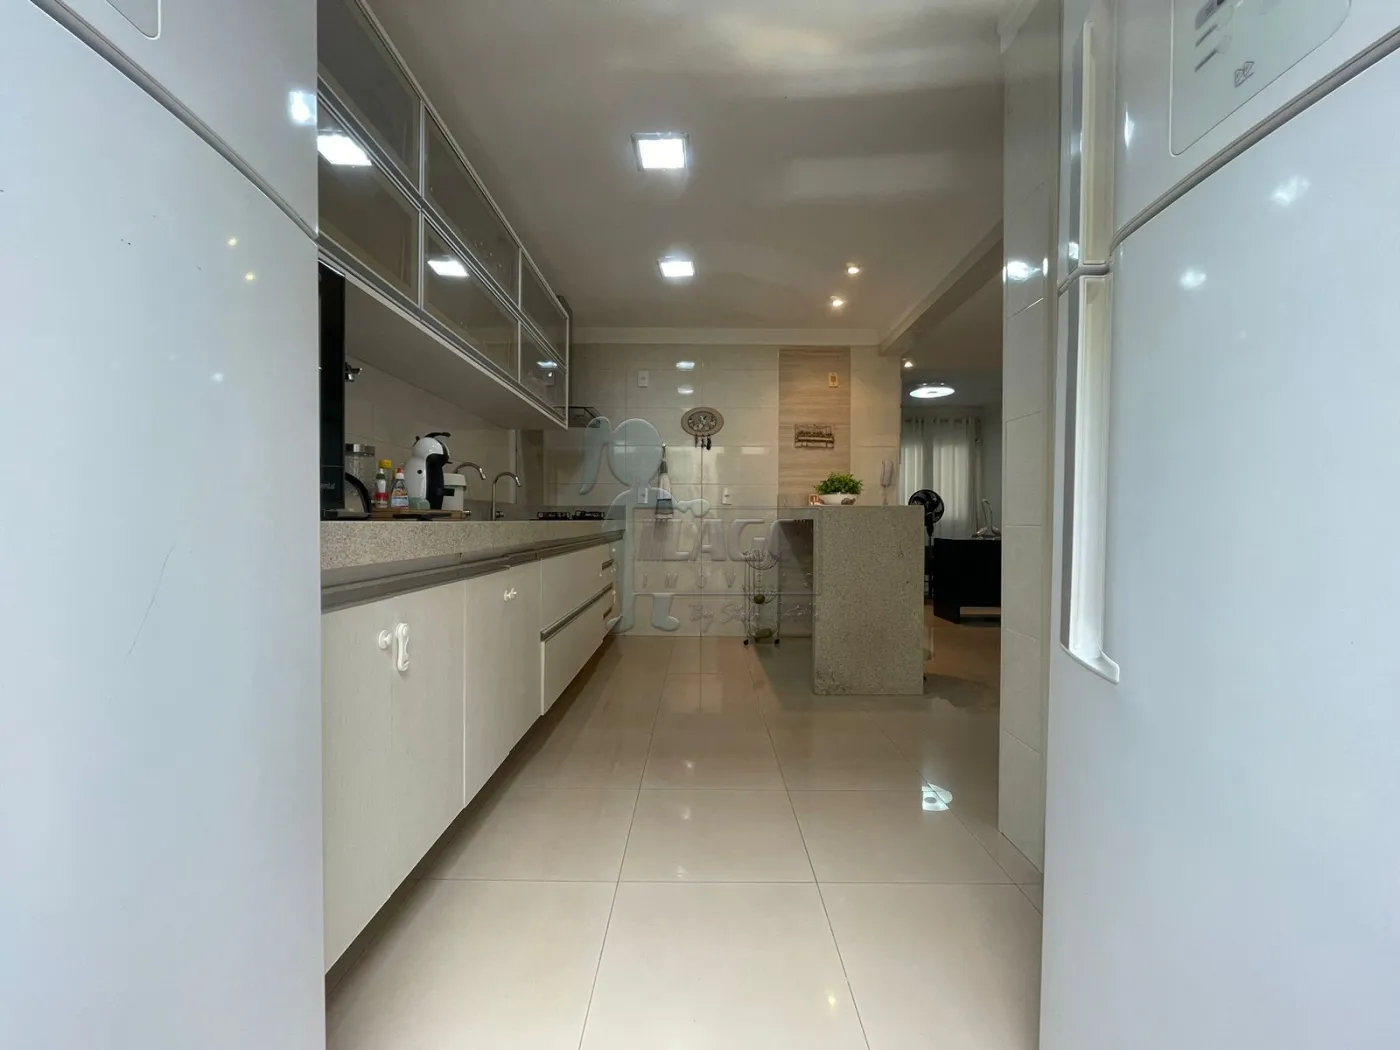 Comprar Casa condomínio / Padrão em Ribeirão Preto R$ 850.000,00 - Foto 8